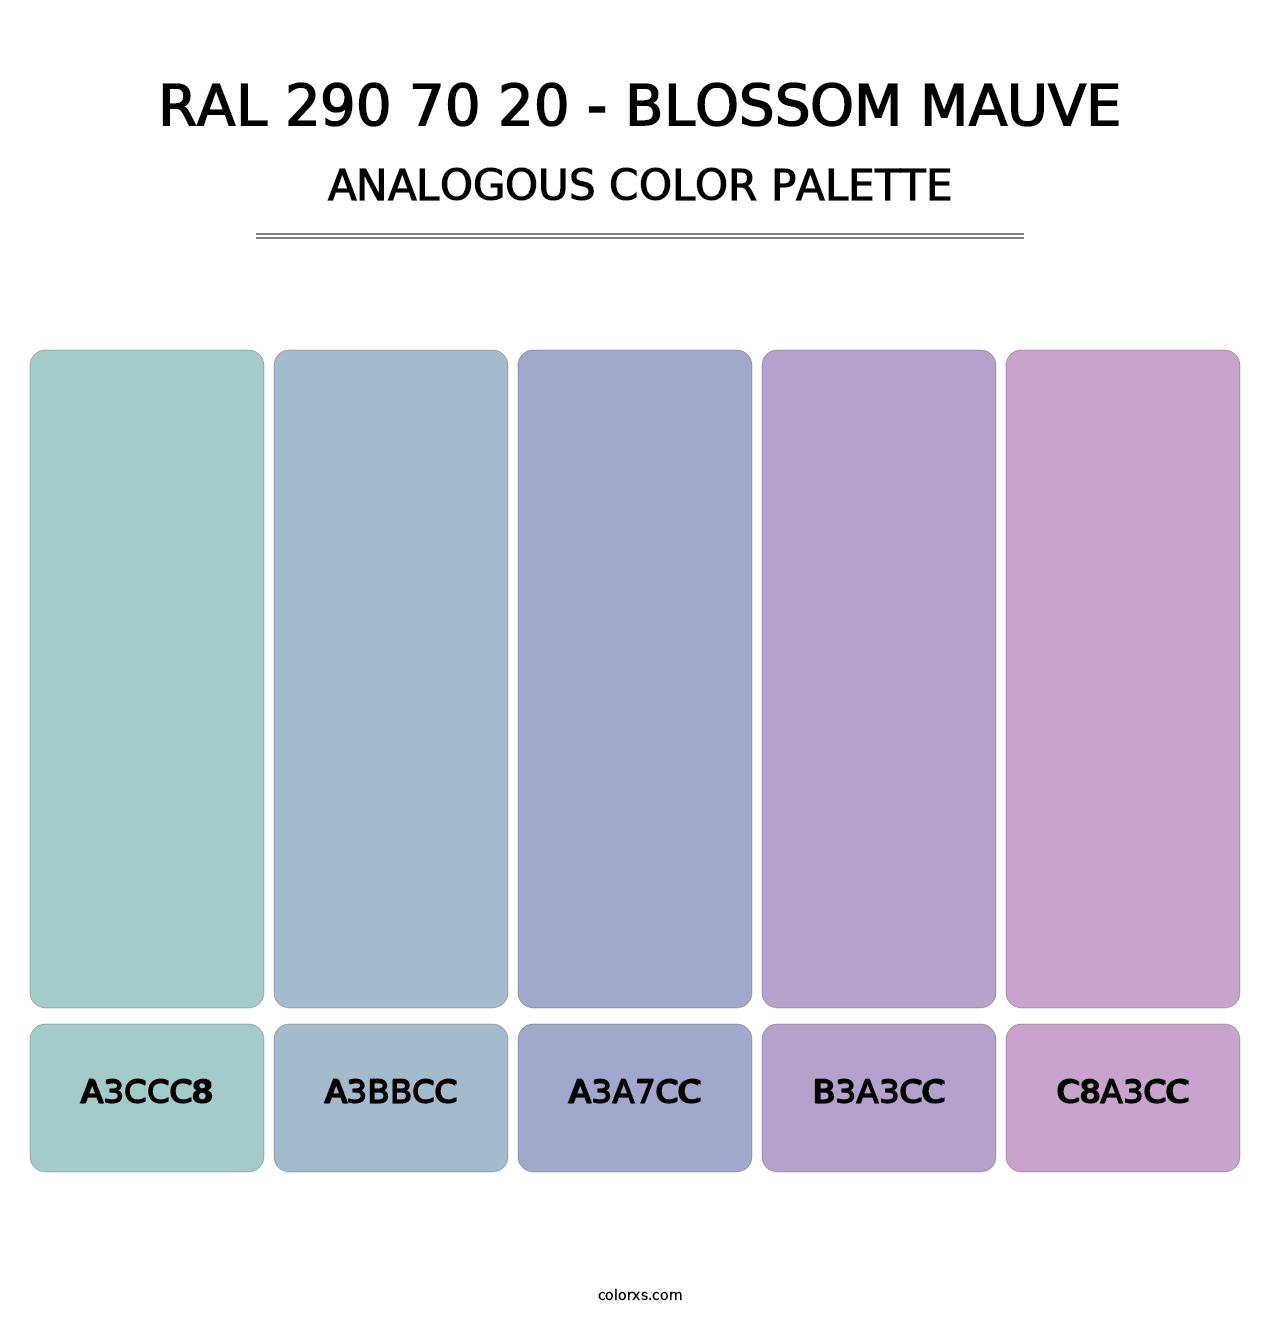 RAL 290 70 20 - Blossom Mauve - Analogous Color Palette